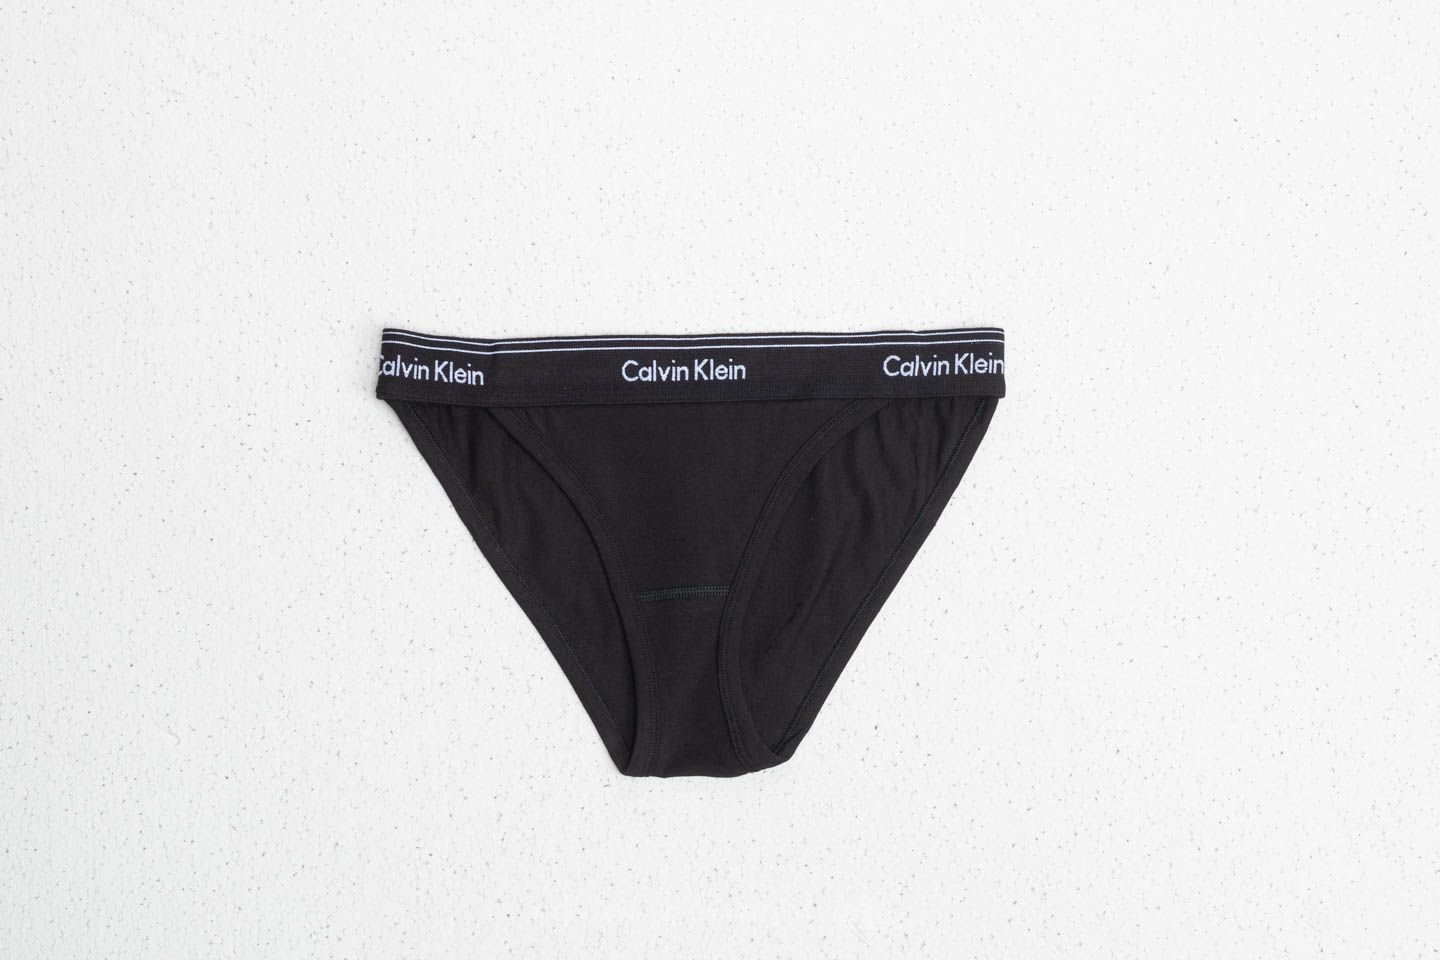 Culotte Calvin Klein Tanga (High Leg) Black